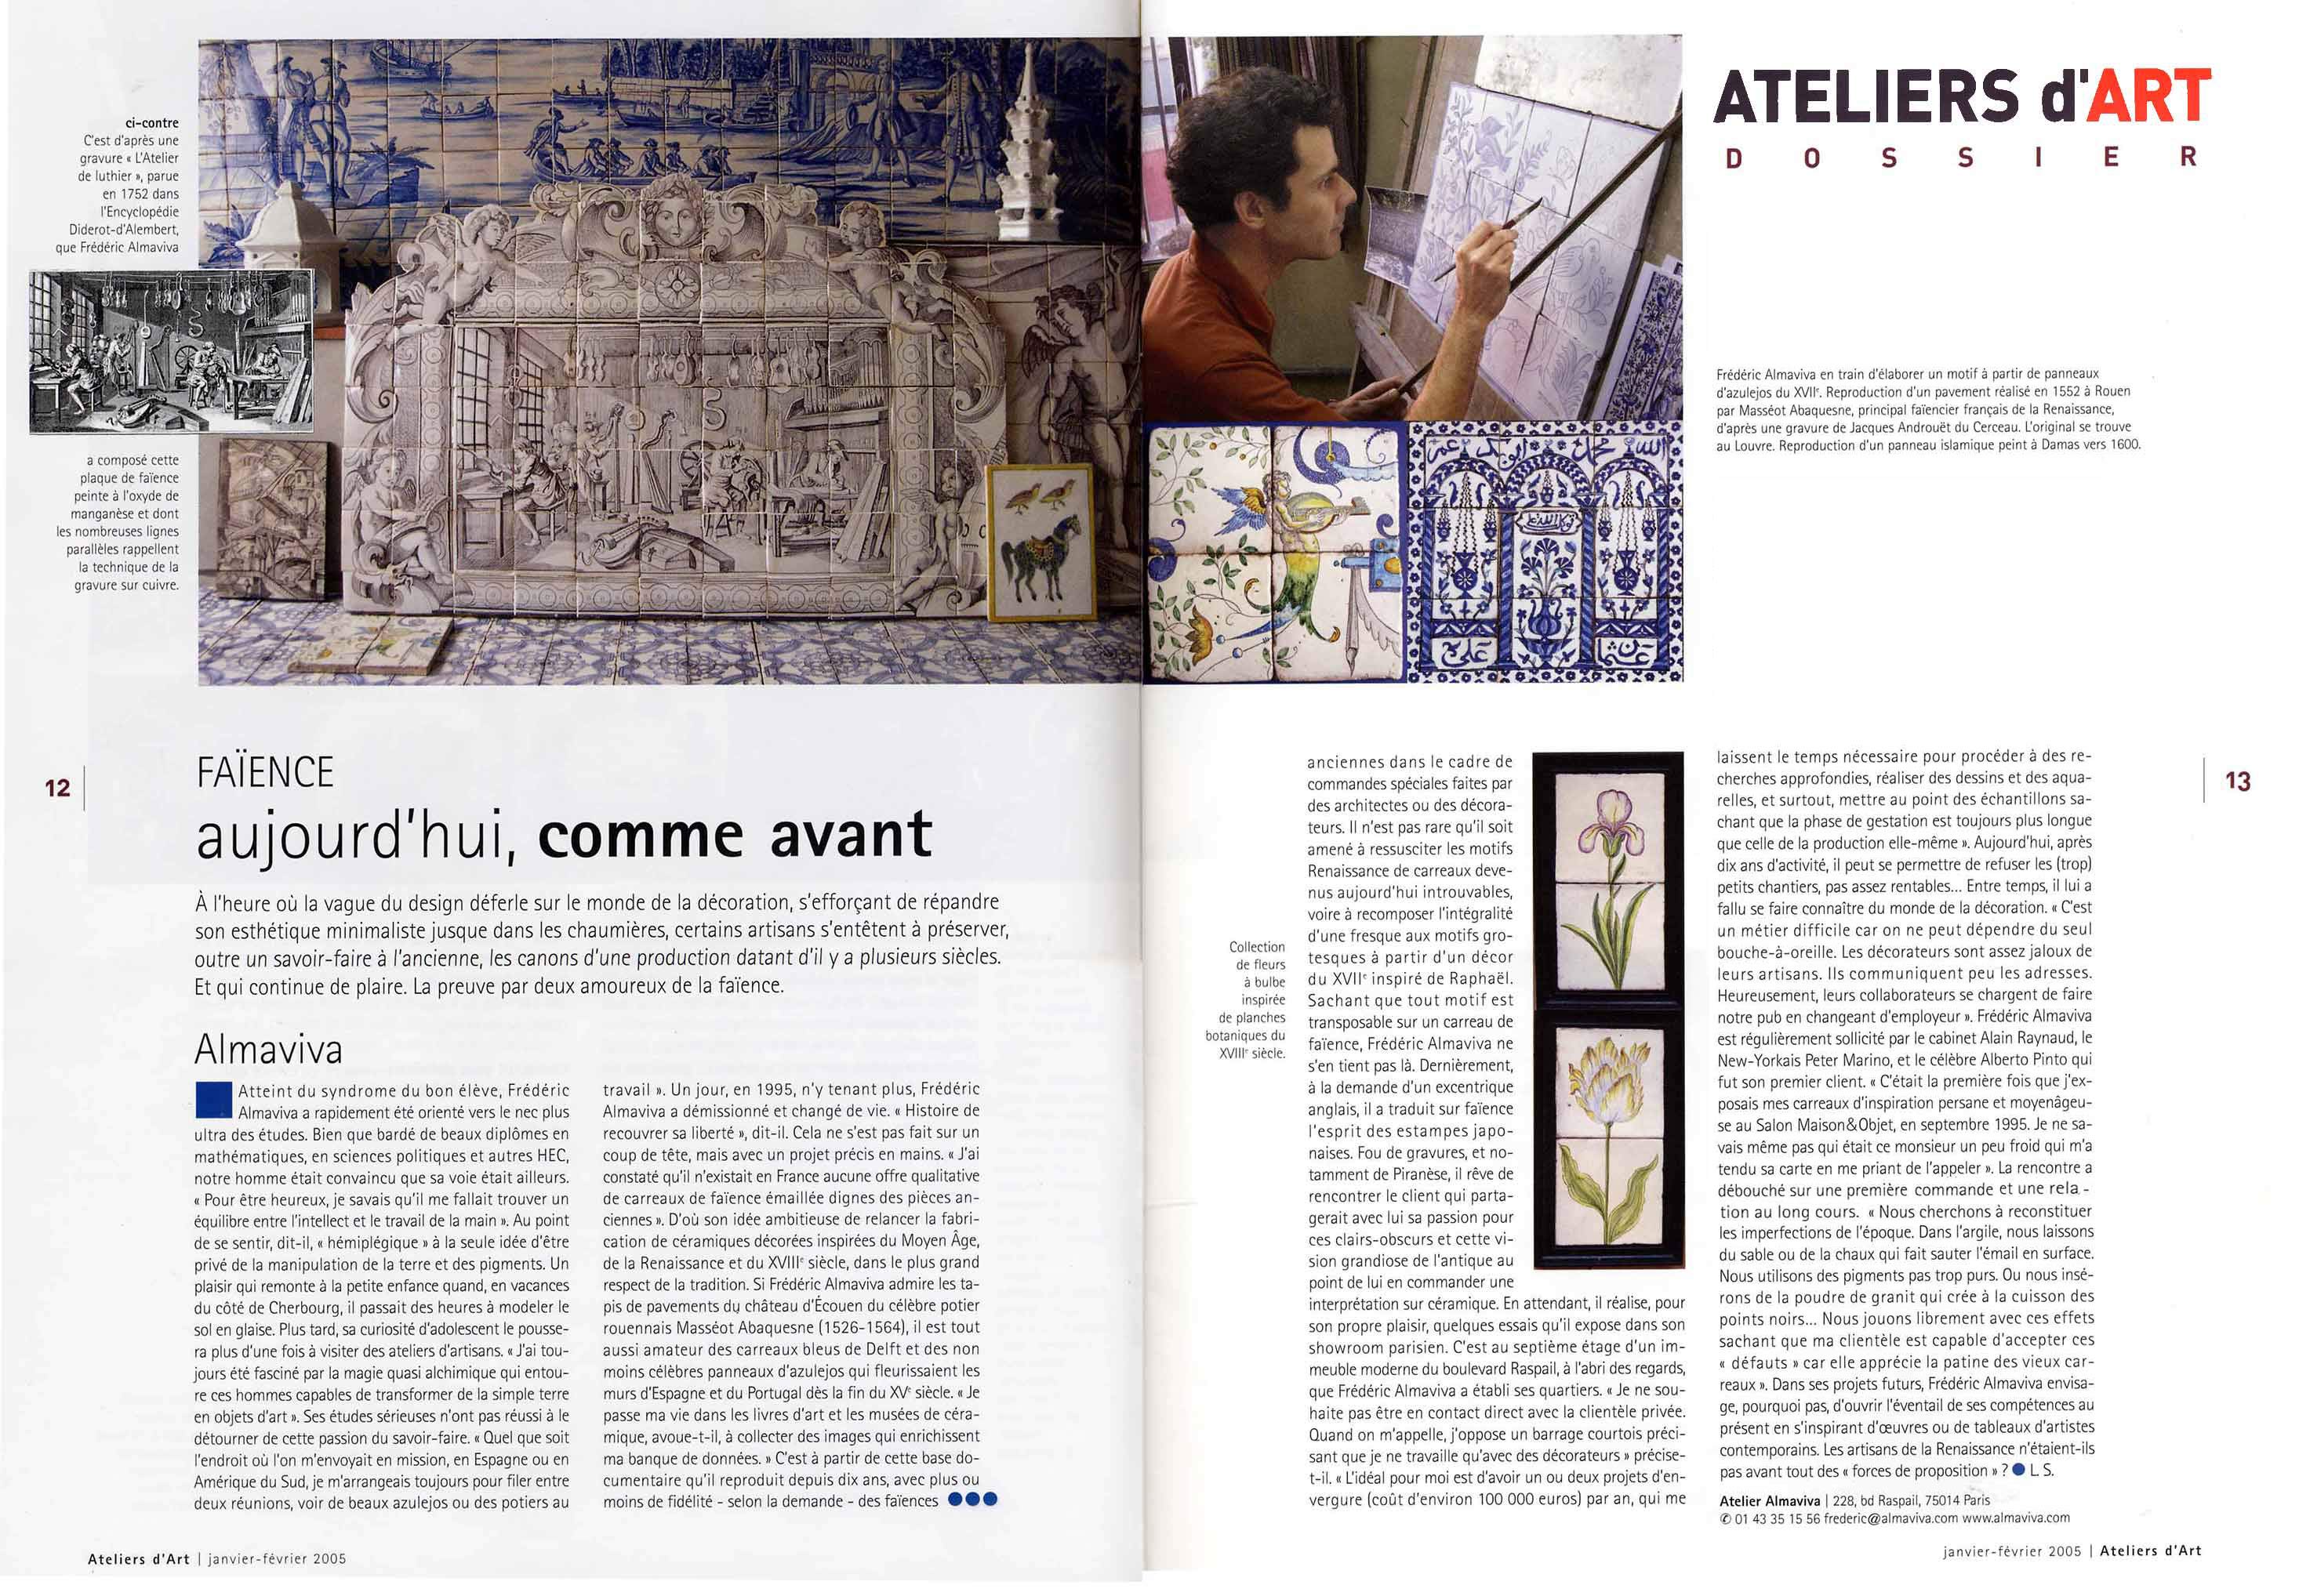 Article des Ateliers d'Art de France sur l'atelier de faïence Almaviva Azulejos